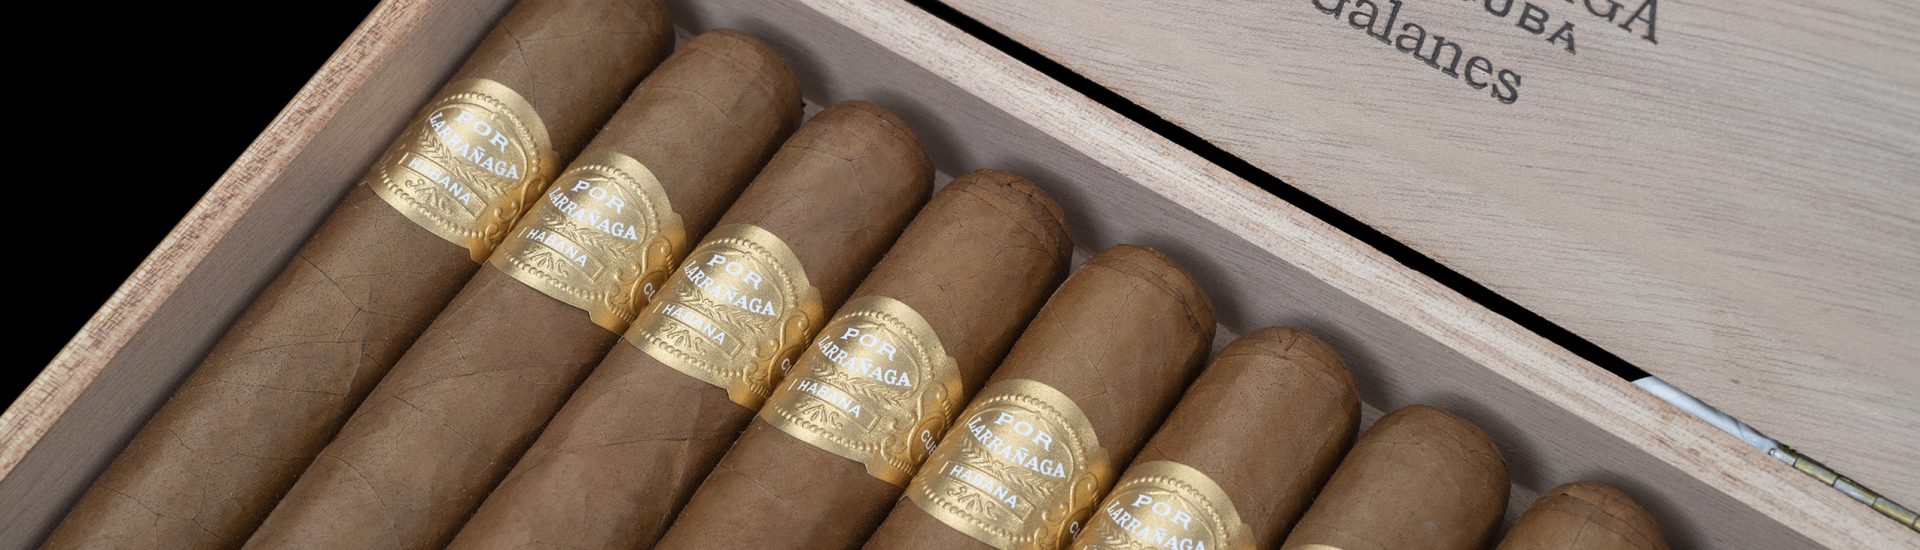 New cigar from Habanos - Por Larranaga - Galanes